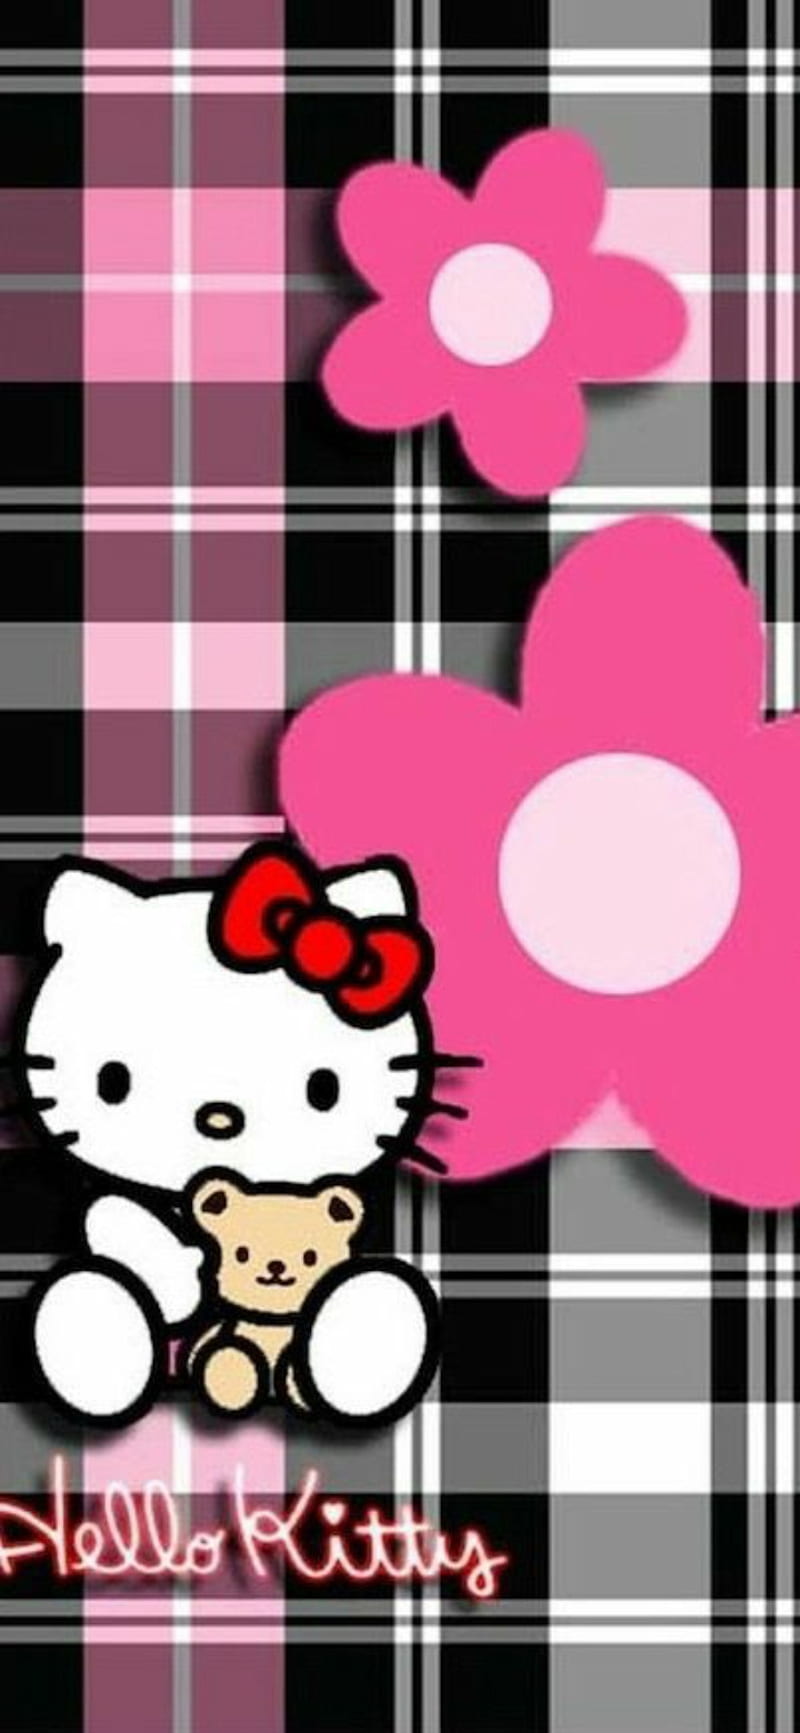 Bạn yêu thích cảm giác mới lạ trên điện thoại của mình? Hãy thử thay đổi Hello Kitty phone wallpaper vào ngay bây giờ! Với nhiều màu sắc và hình ảnh được thiết kế độc đáo, Hello Kitty phone wallpaper sẽ làm cho điện thoại của bạn trở nên đáng yêu và khác biệt hơn. Hãy xem ảnh liên quan và khám phá ngay!